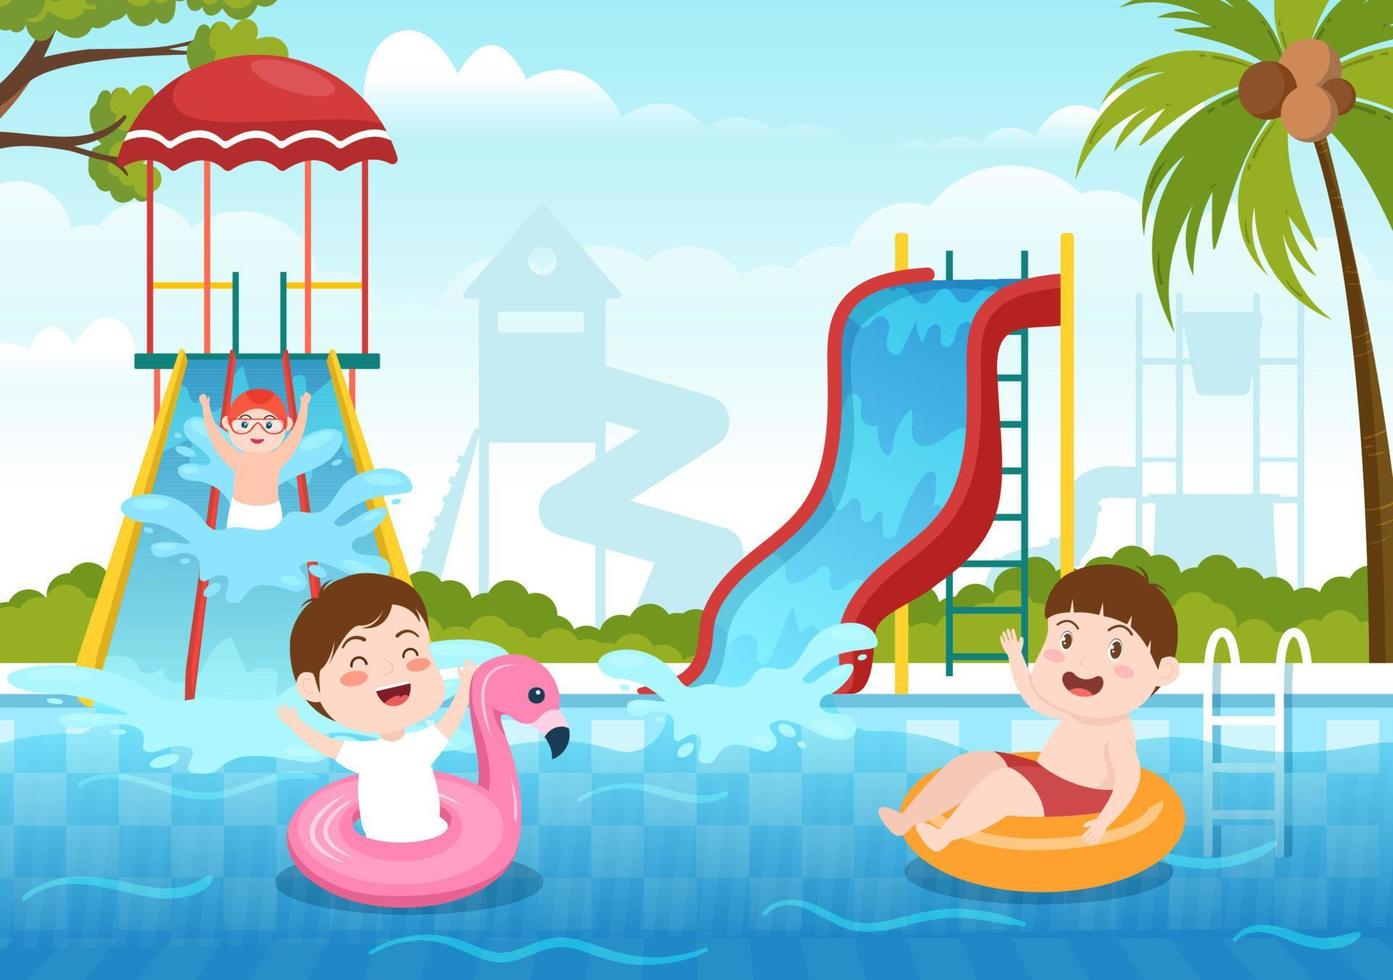 parco acquatico con piscina, divertimento, scivolo, palme e i bambini nuotano per la ricreazione e il parco giochi all'aperto nell'illustrazione piatta del fumetto vettore